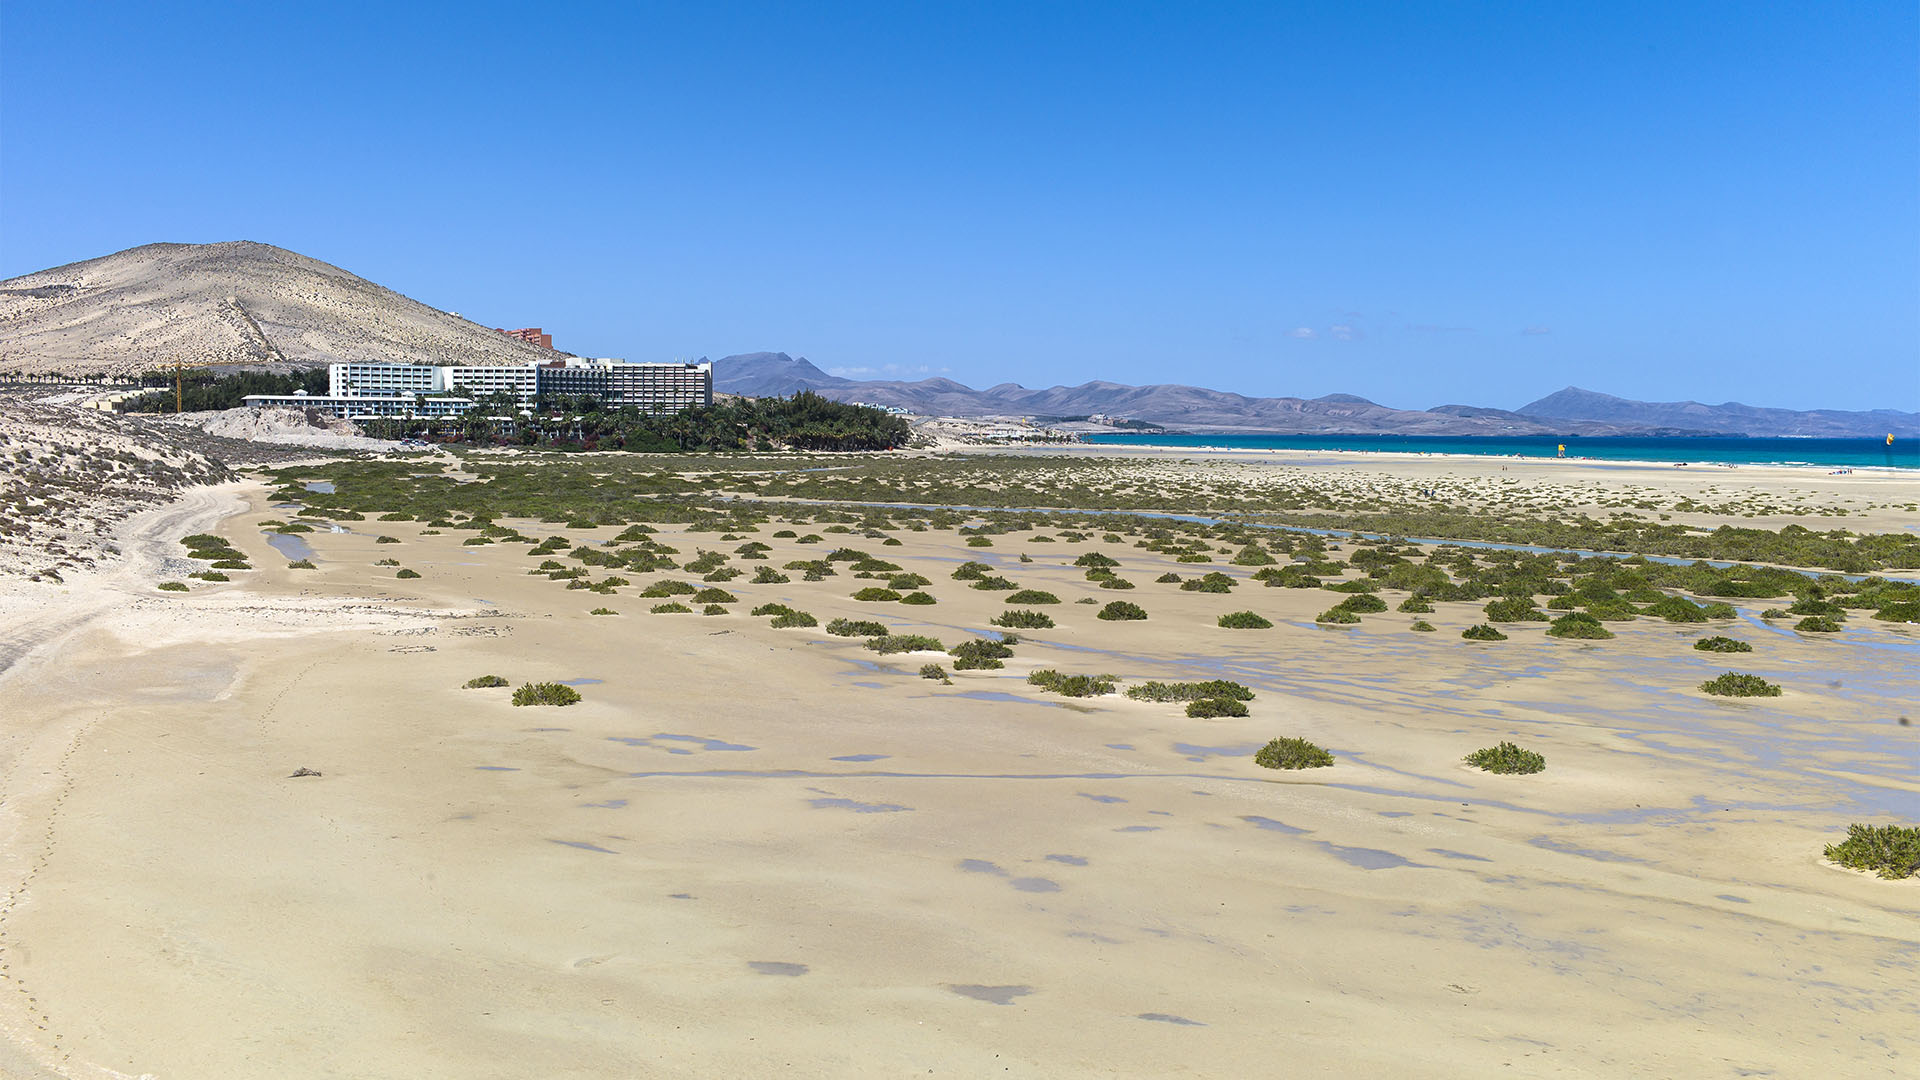 Das Melia Gorriones Hotel Fuerteventura – näher kann man an der Lagune nicht mehr liegen. Heute würde so ein Bau nicht mehr genehmigt werden. Das Glück des Early Bird.